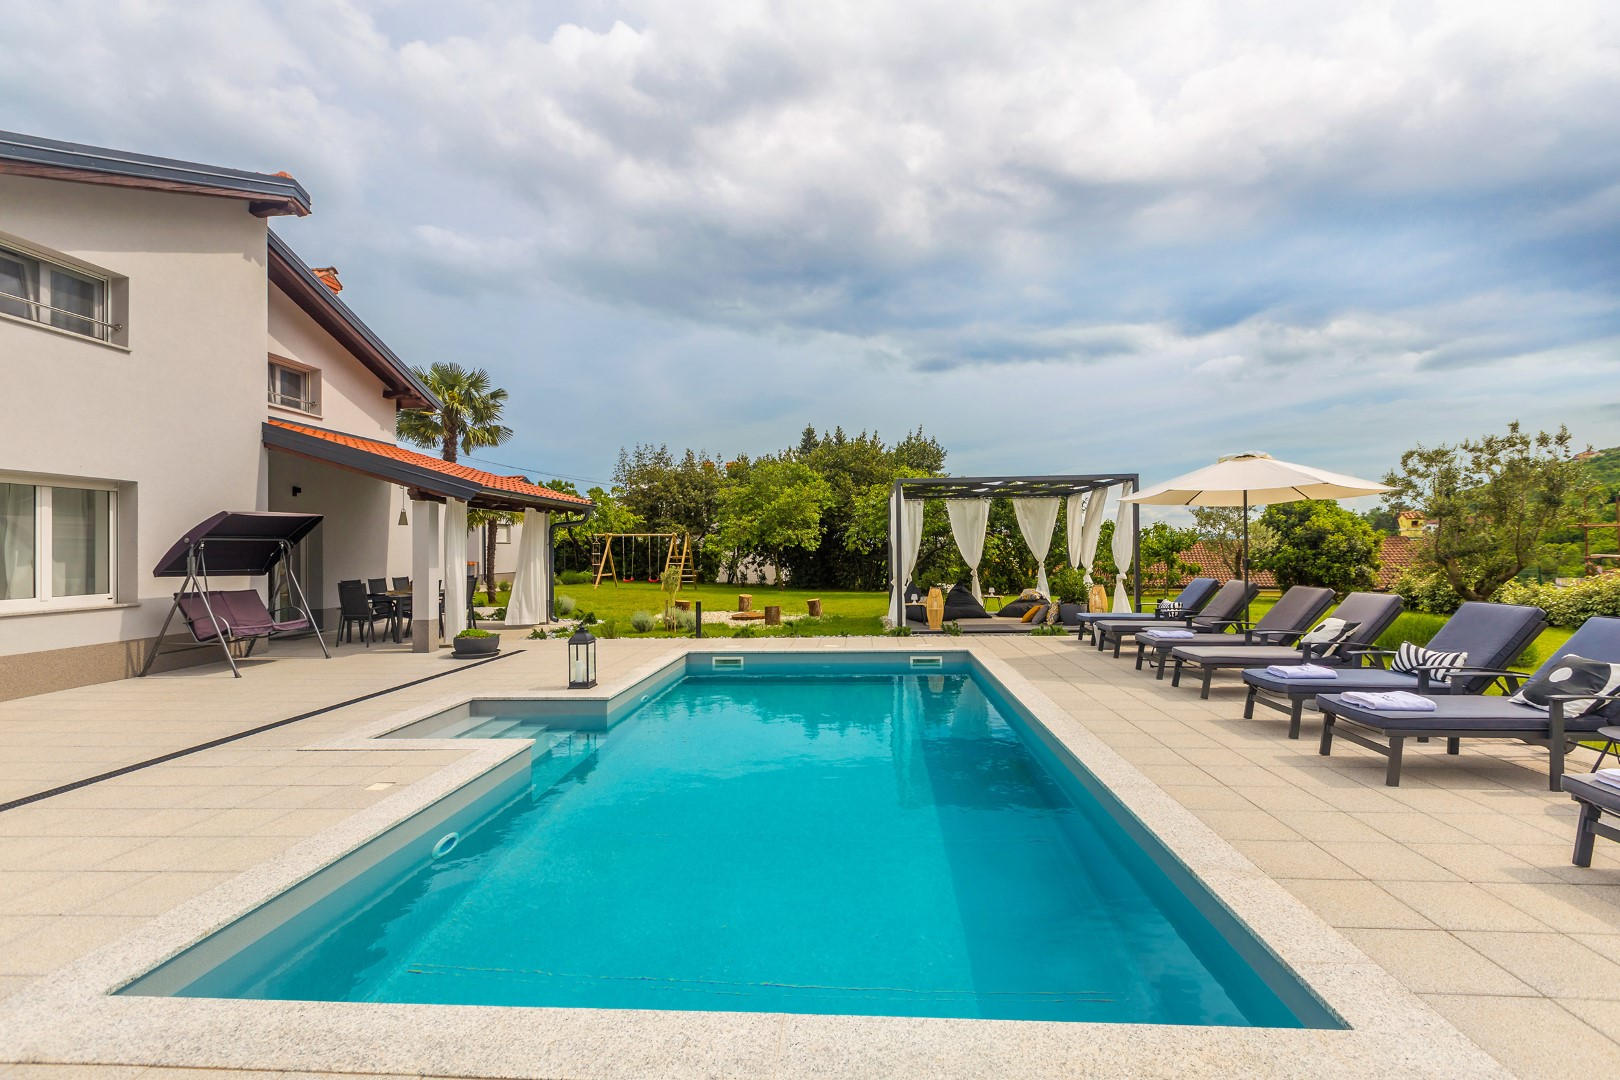 Pogledajte bogatu ponudu vila te rezervirajte vašu idealnu kuću s bazenom